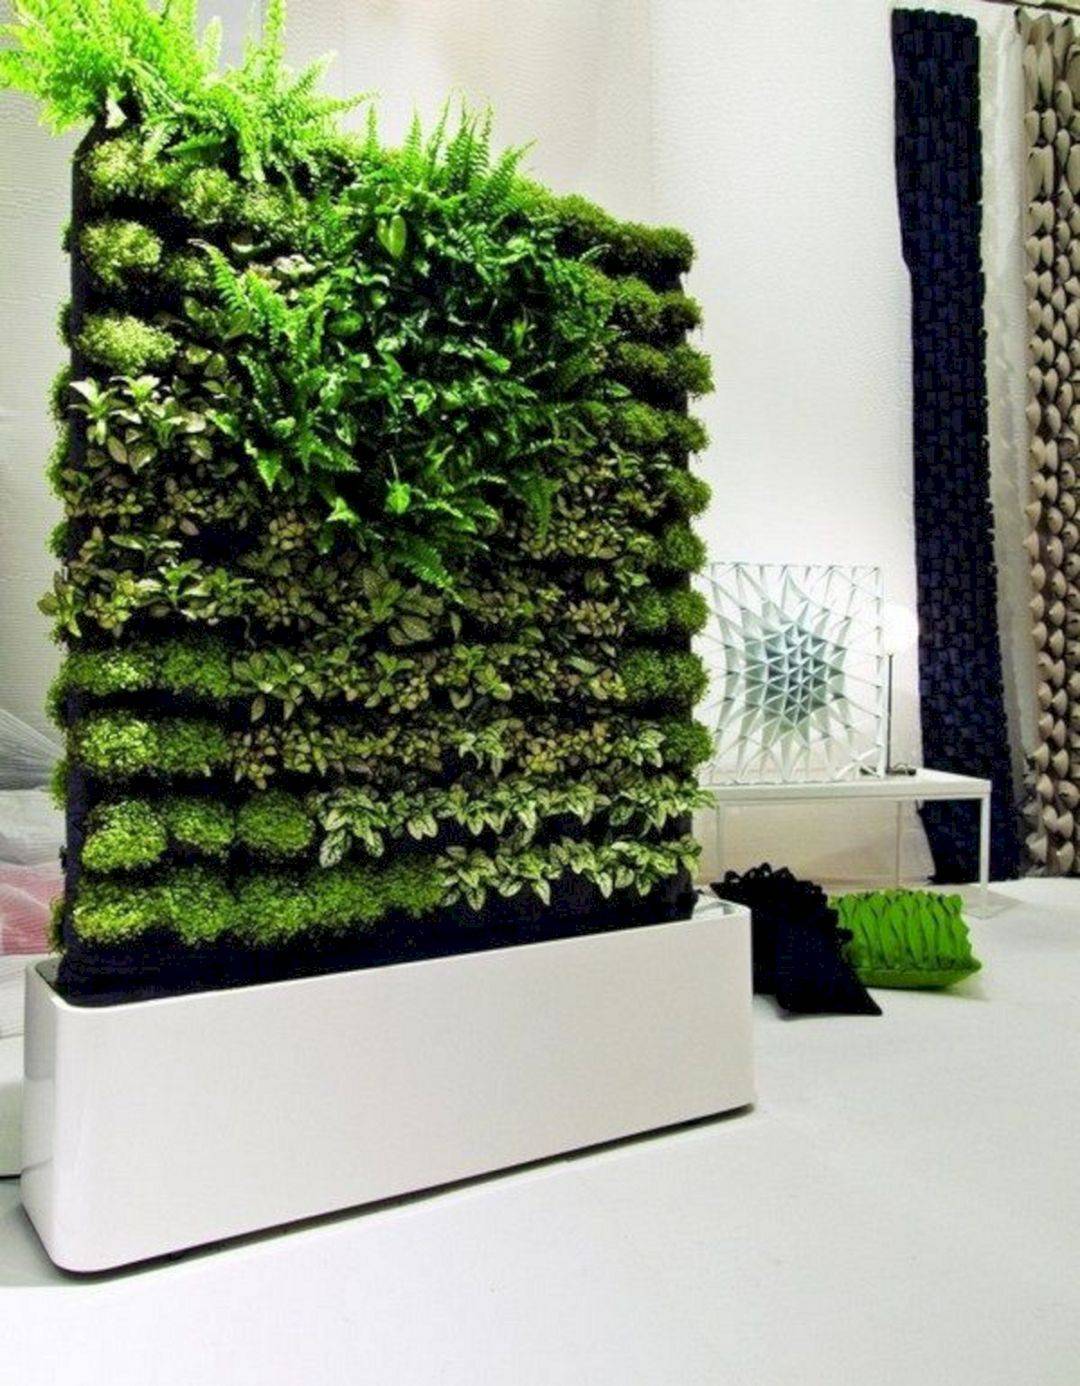 Hydroponic Wall Garden Design